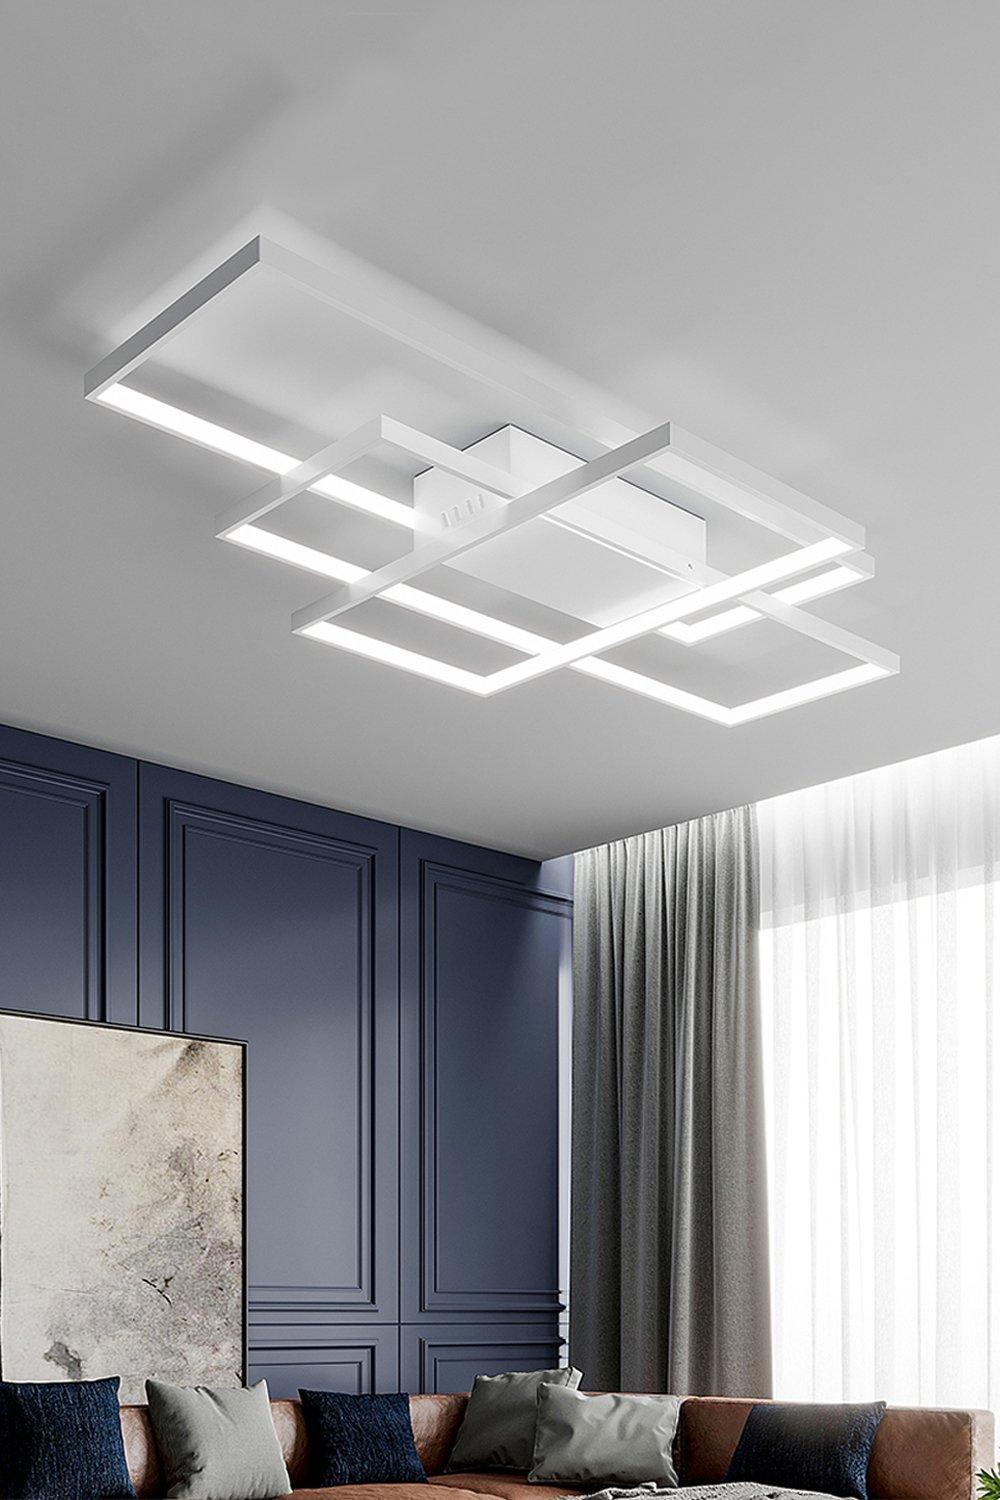 110cm 3 Lights Neutral Style Cool White Rectangular LED Semi Flush Ceiling Light